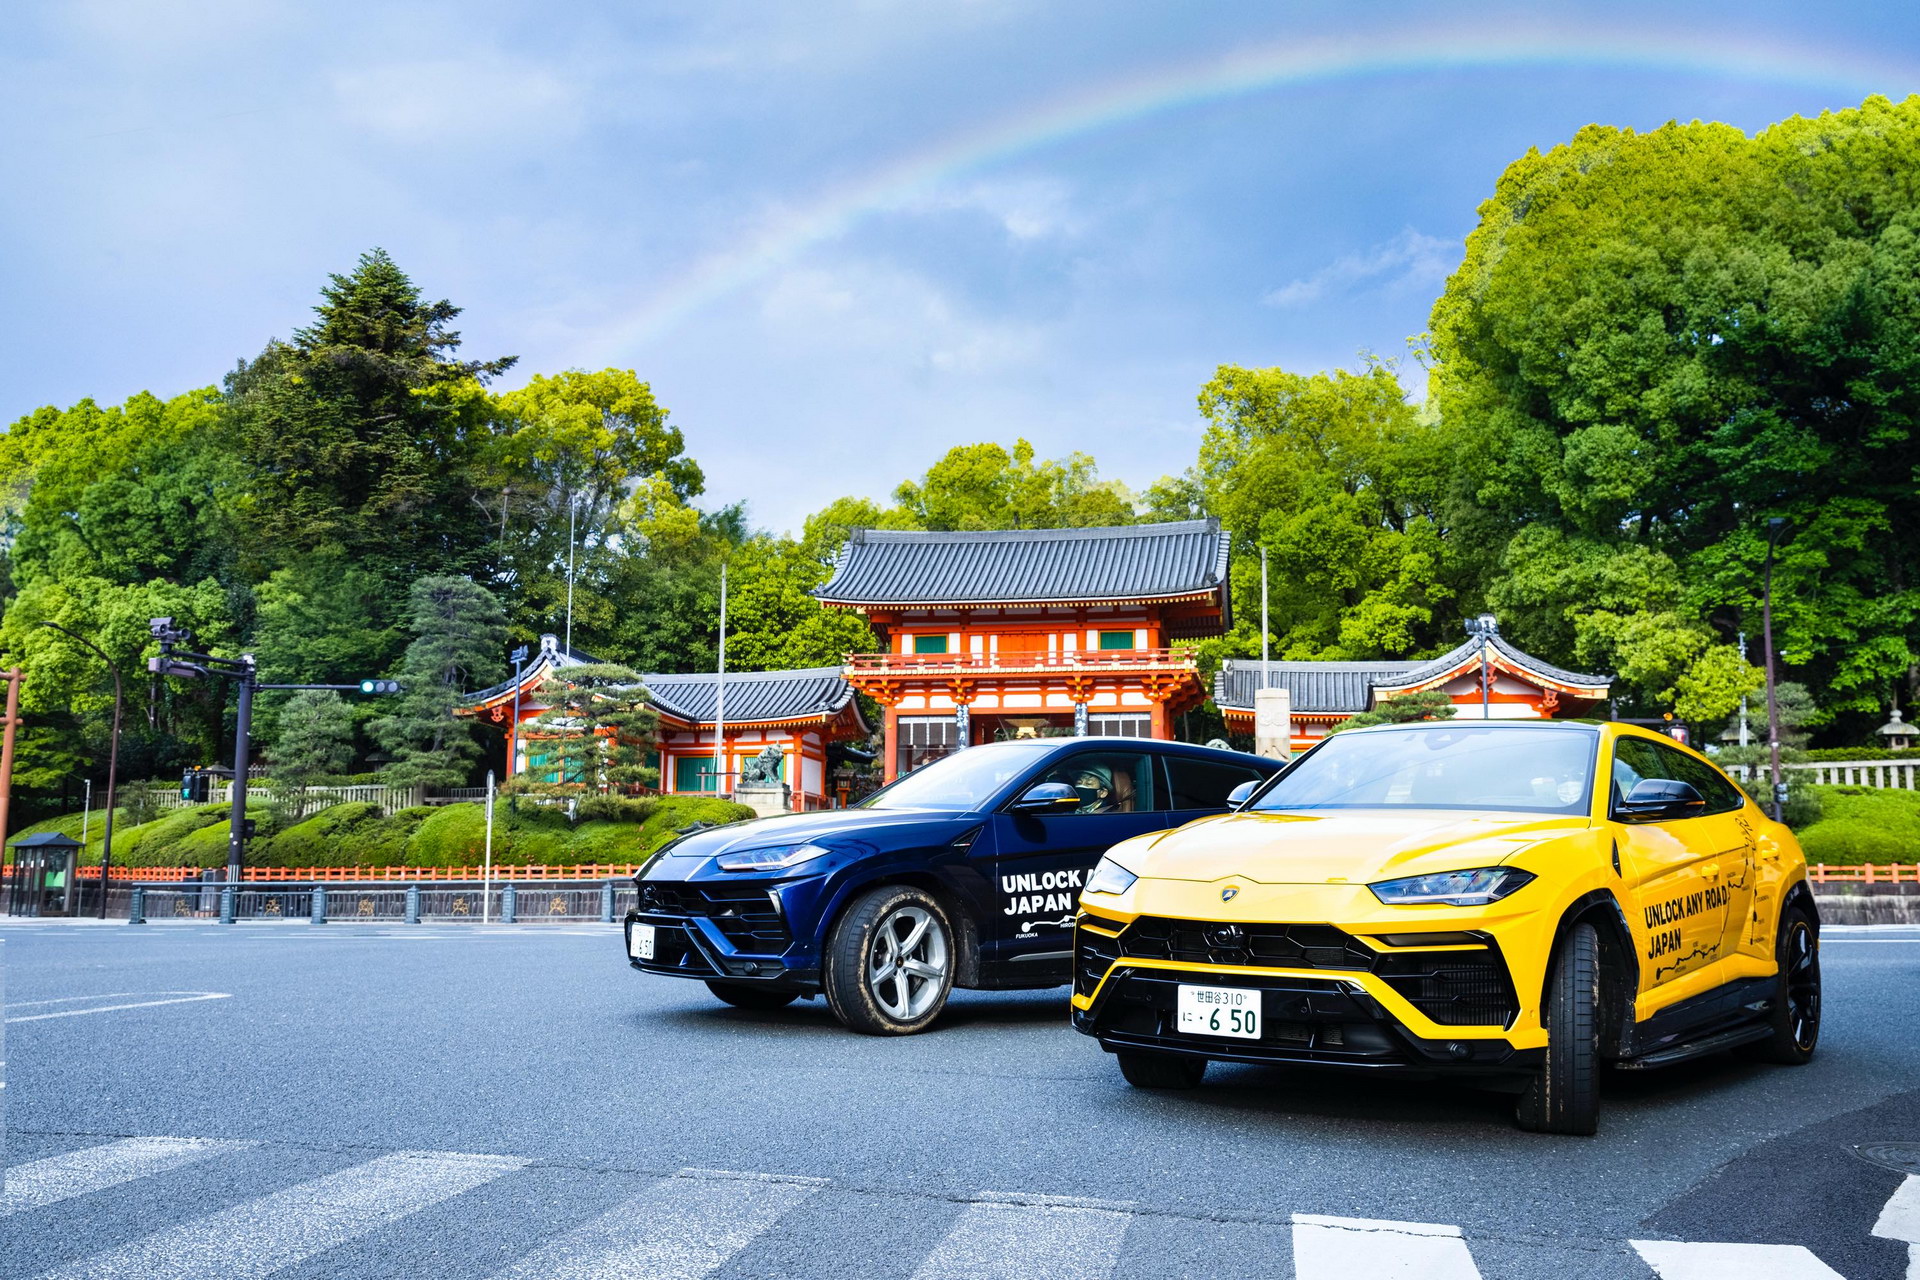 Hành trình khám phá vẻ đẹp đất nước Nhật Bản cùng Lamborghini Urus lamborghini-urus-japan-road-trip-11.jpg